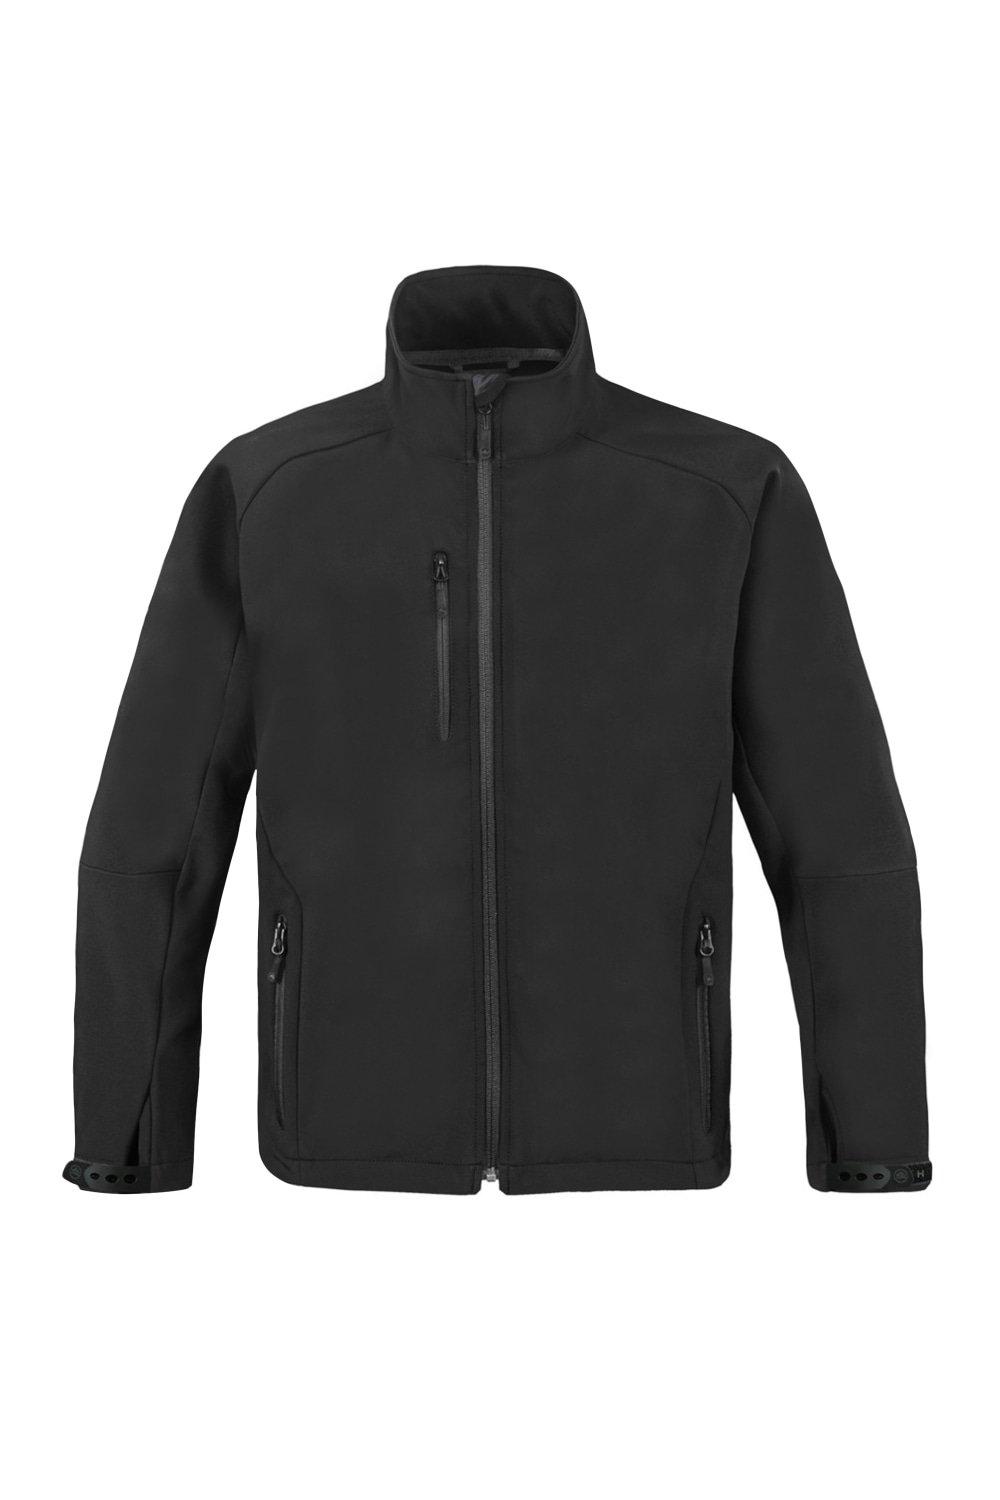 Сверхлегкая куртка из софтшелла (водостойкая и дышащая) Stormtech, черный куртка engage odlo средней длины на молнии синий